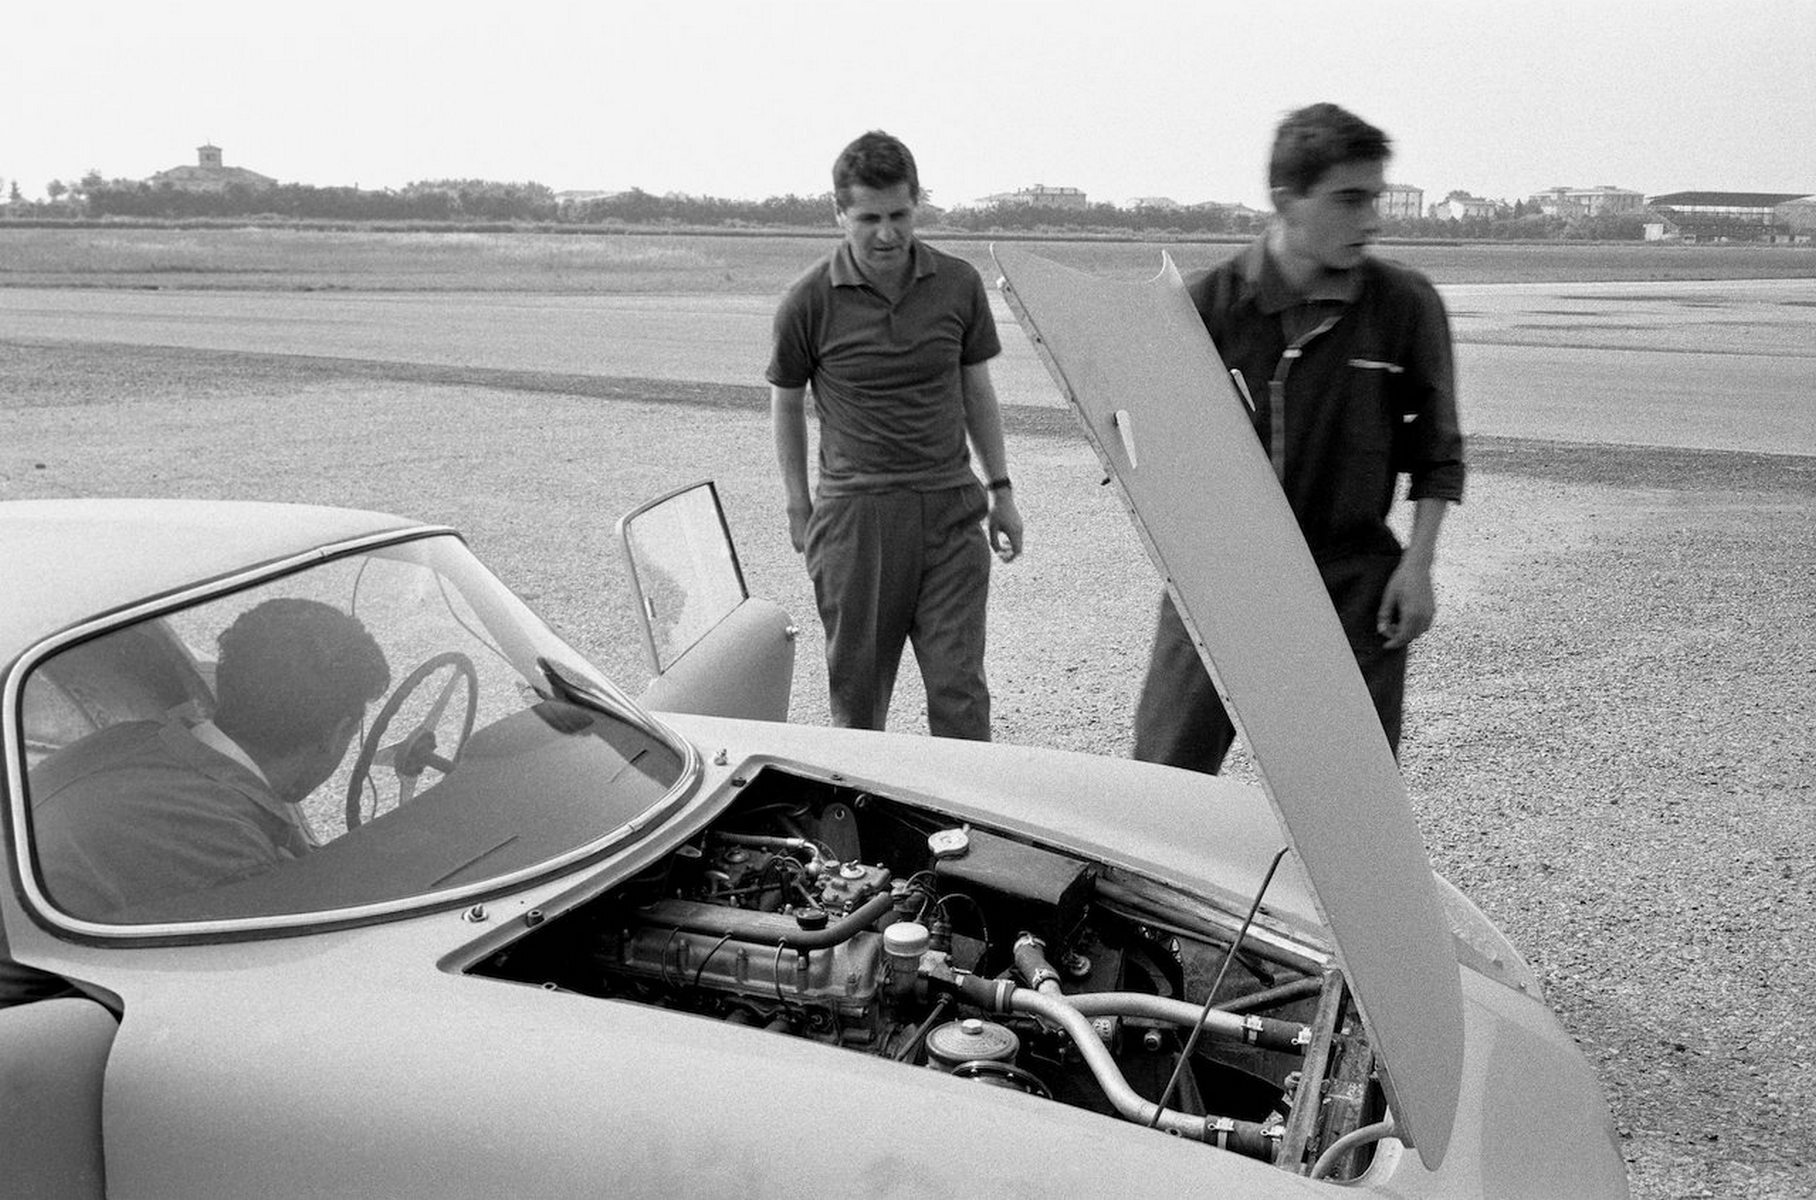 Джотто Биззаррини на тестах ASA 1000 GTC в июне 1963 года на аэродроме Модены